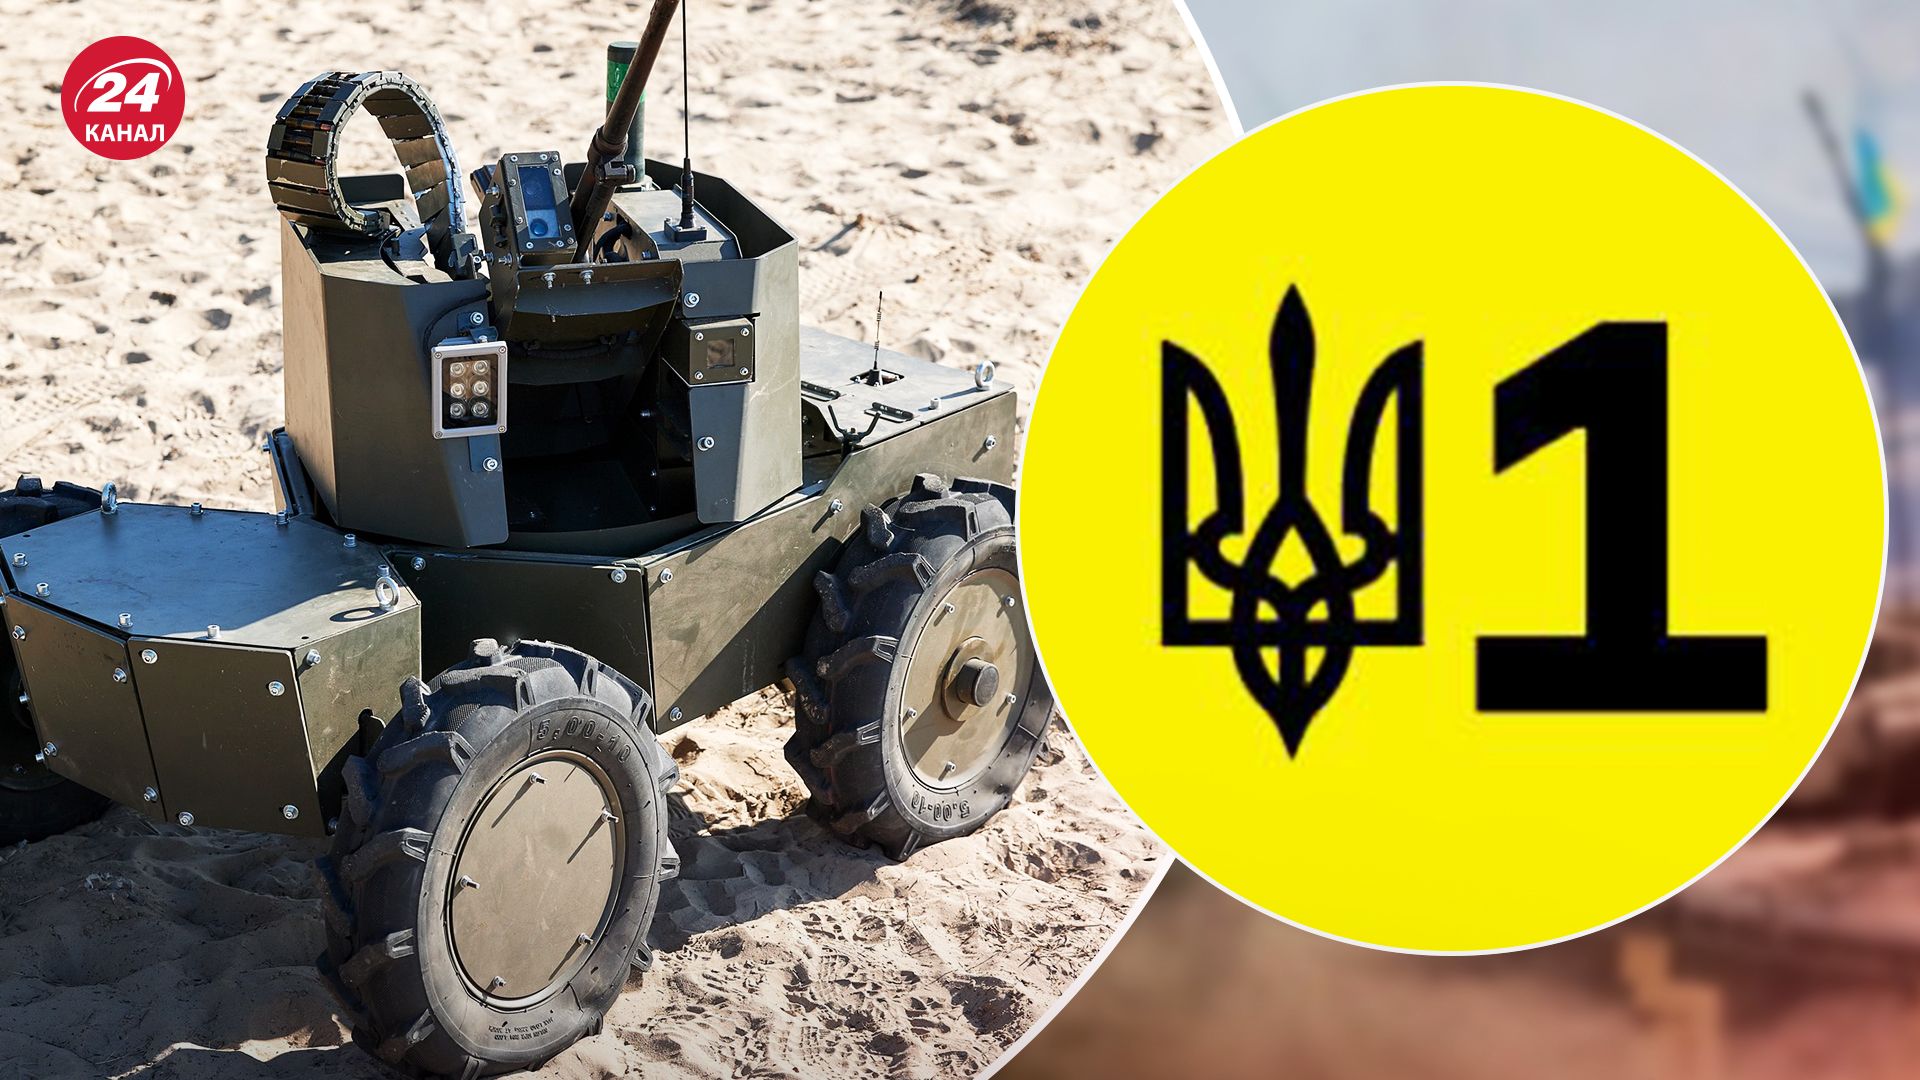 Украинские производители оружия - какие разработки регистрируют на Brave1 и сколько их - 24 Канал